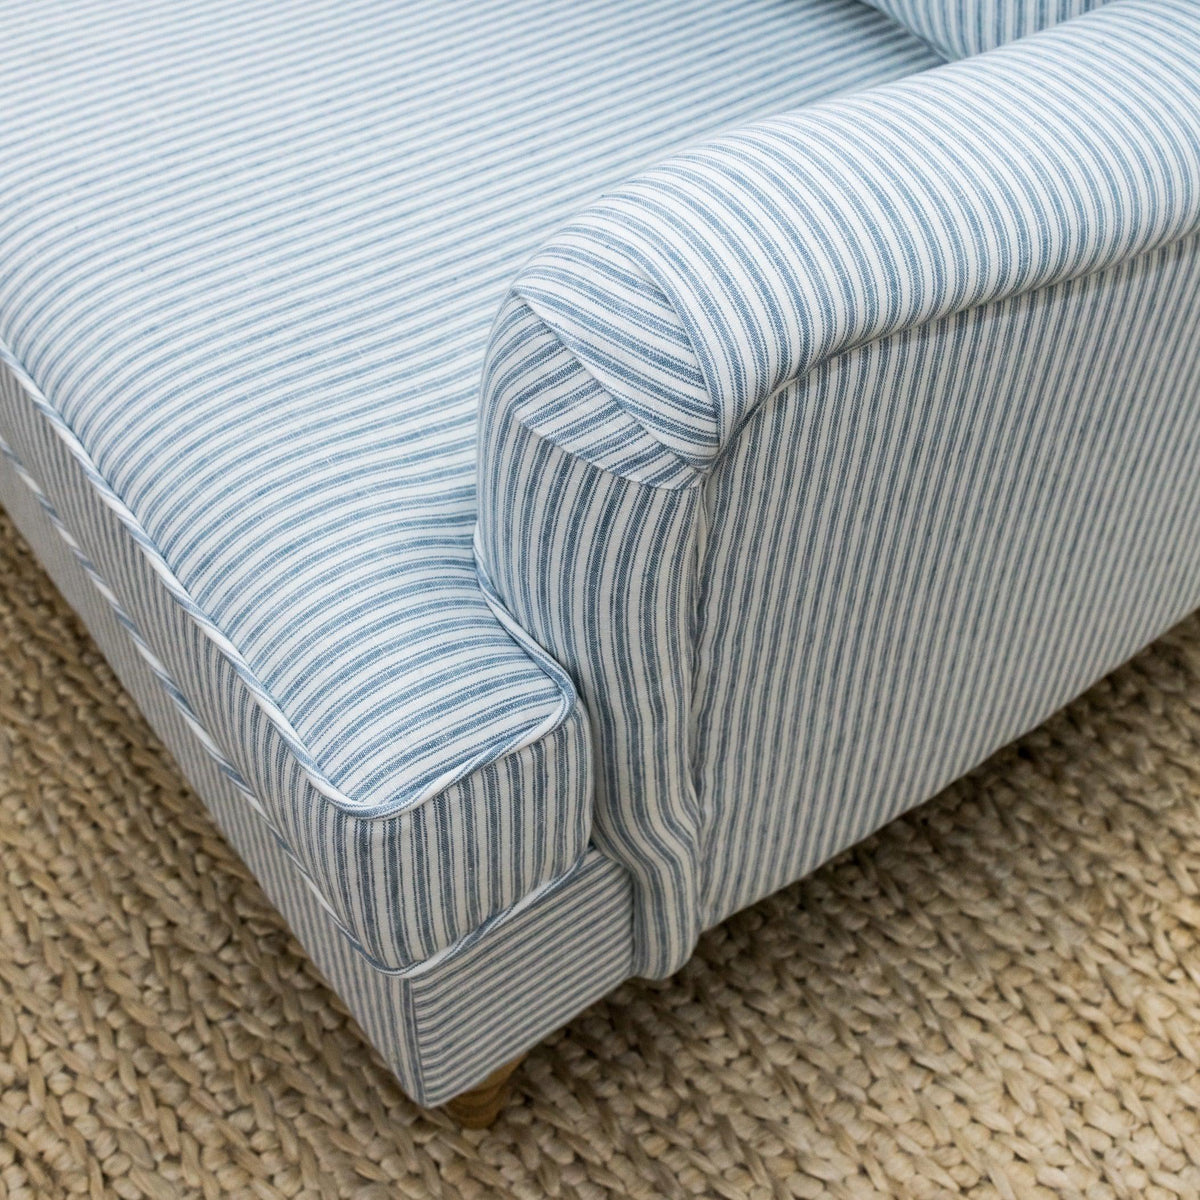 Blue Striped Linen Roll Armchair